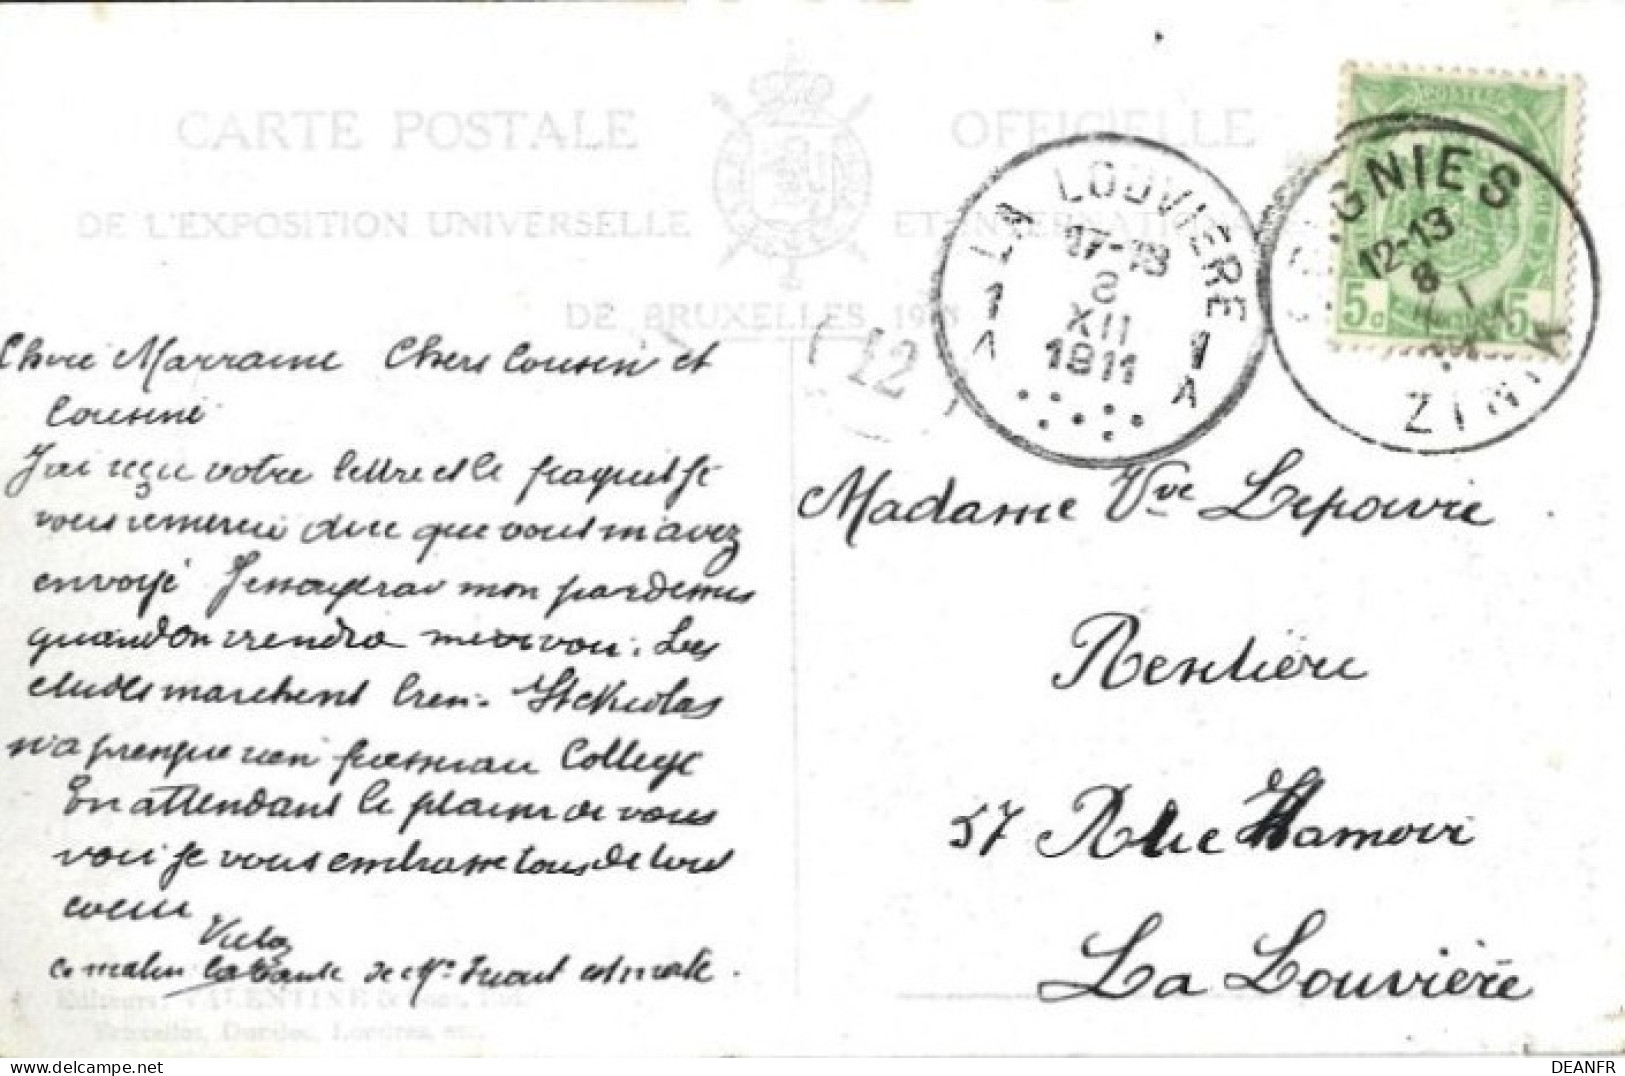 EXPOSITION De BRUXELLES 1910 : Pavillon Canada,Les Fruits Exposés. Carte Impeccable. - Mostre Universali